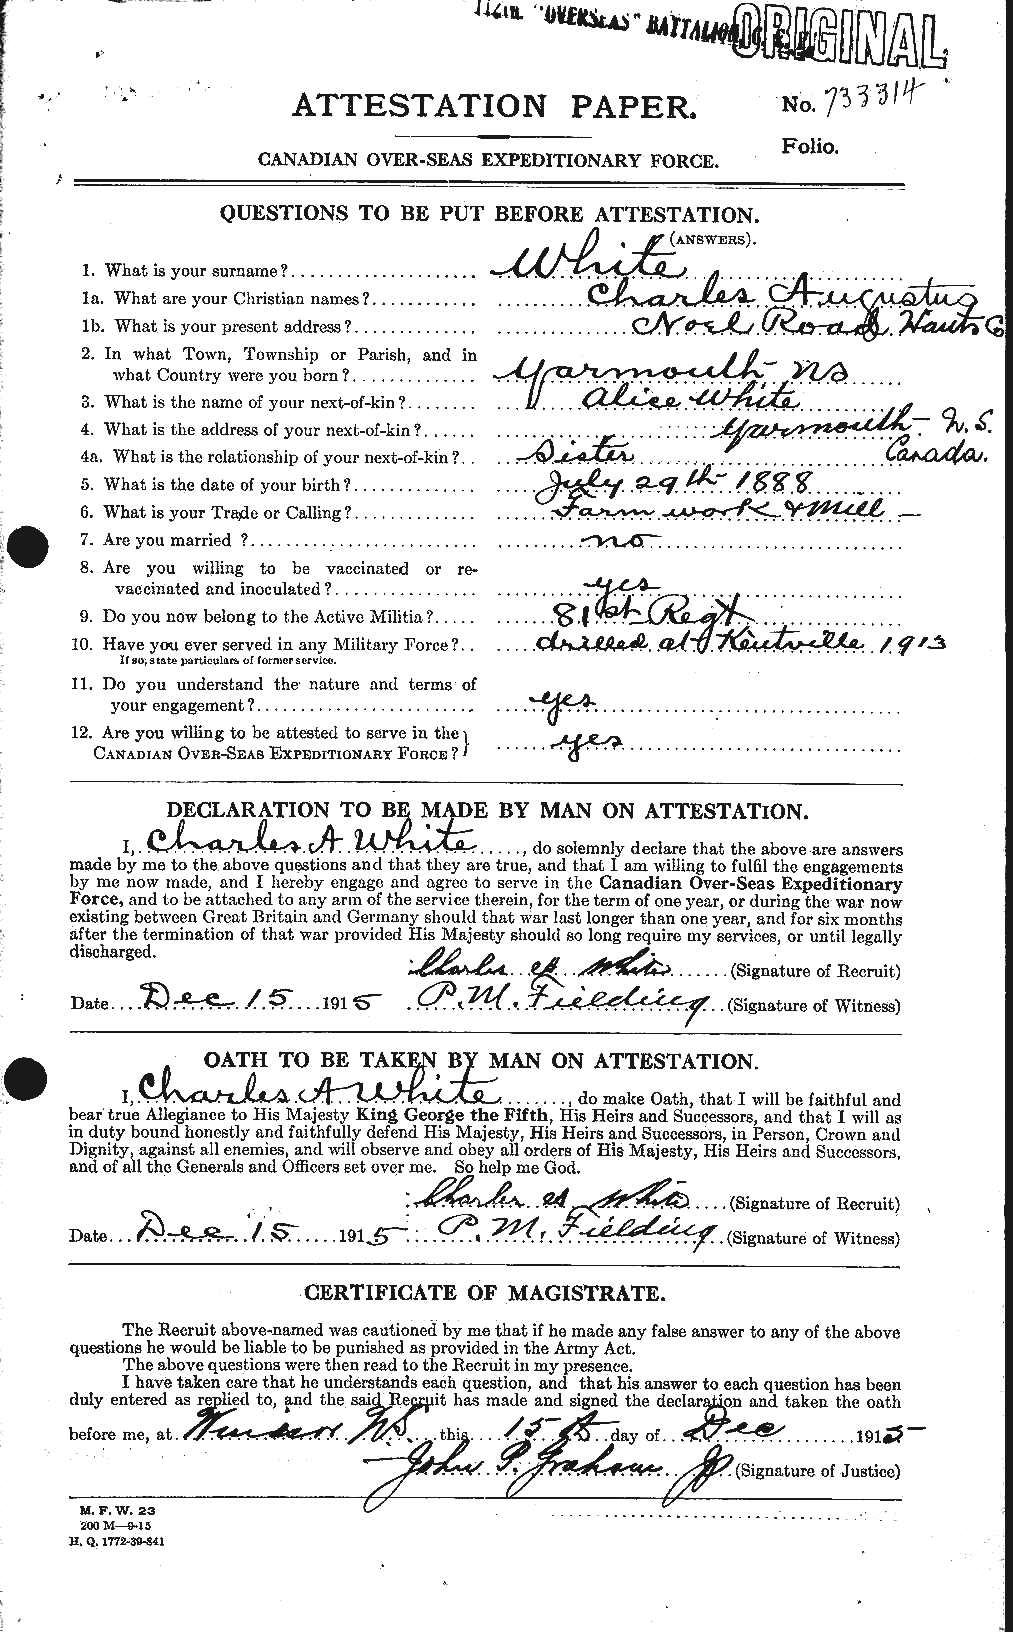 Dossiers du Personnel de la Première Guerre mondiale - CEC 669919a